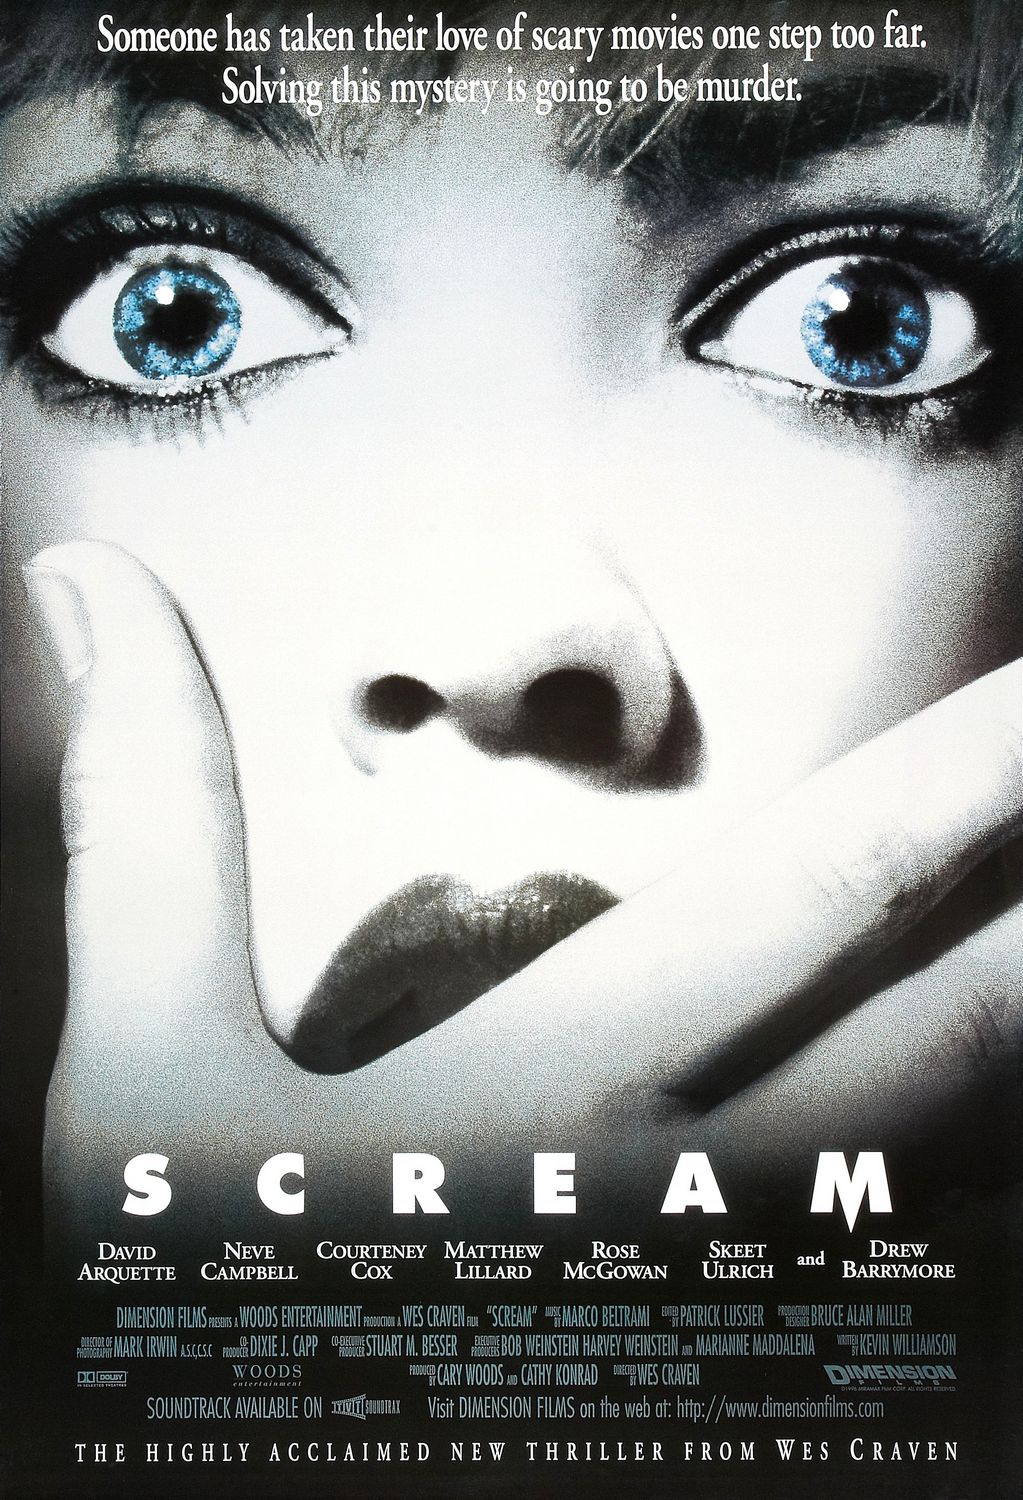 惊声尖叫.Scream 1996 REMASTERED BluRay 1080p DTS AC3 x264-MgB 8.44GB